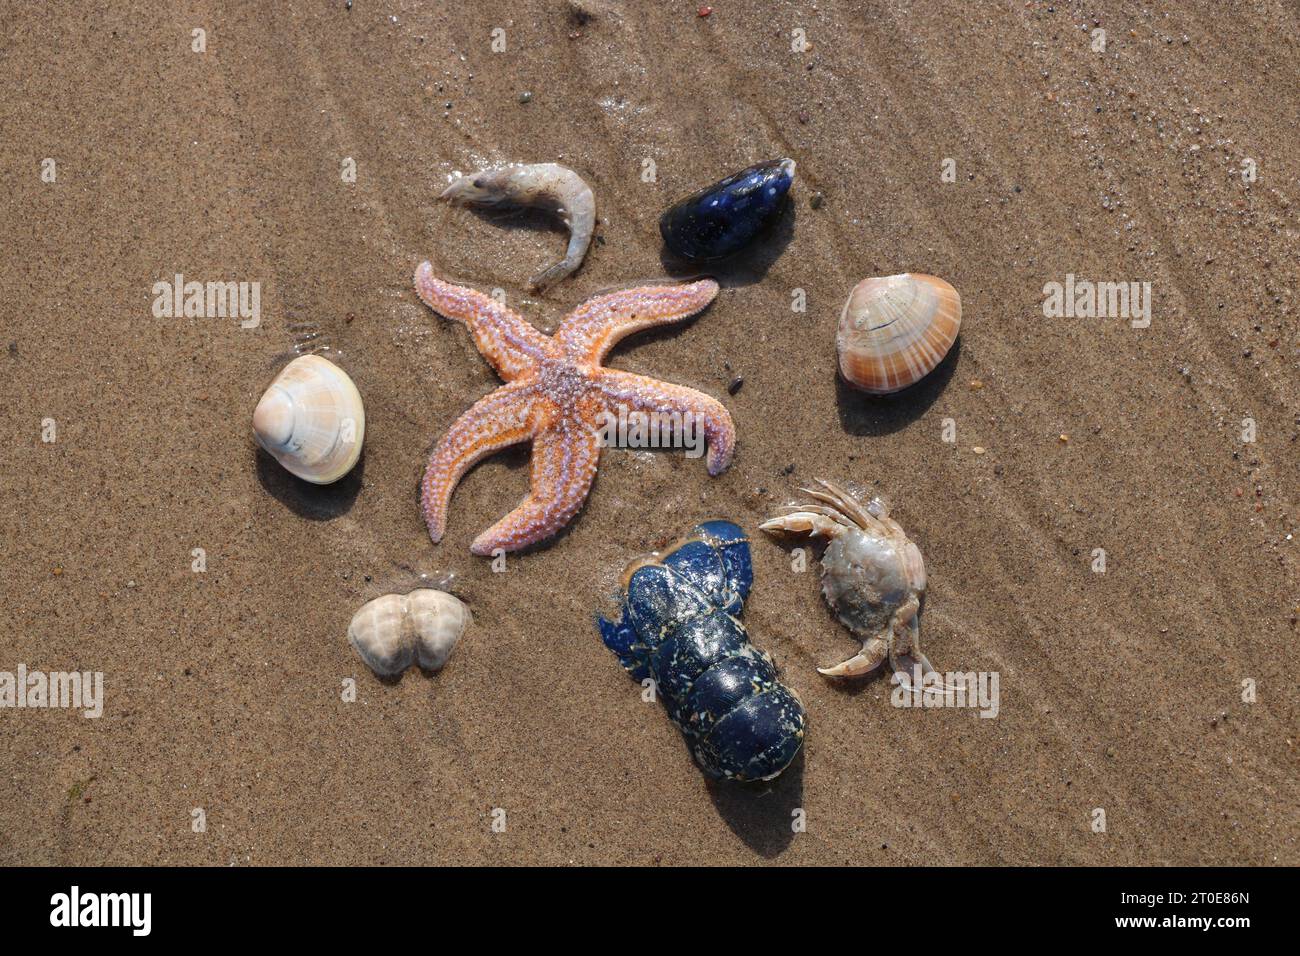 Meeresbewohner auf Sandy Beach Blue Lobster Tail, Seesterne, Garnelen, Krabben, Muscheln und Muscheln Krebstiere Stockfoto